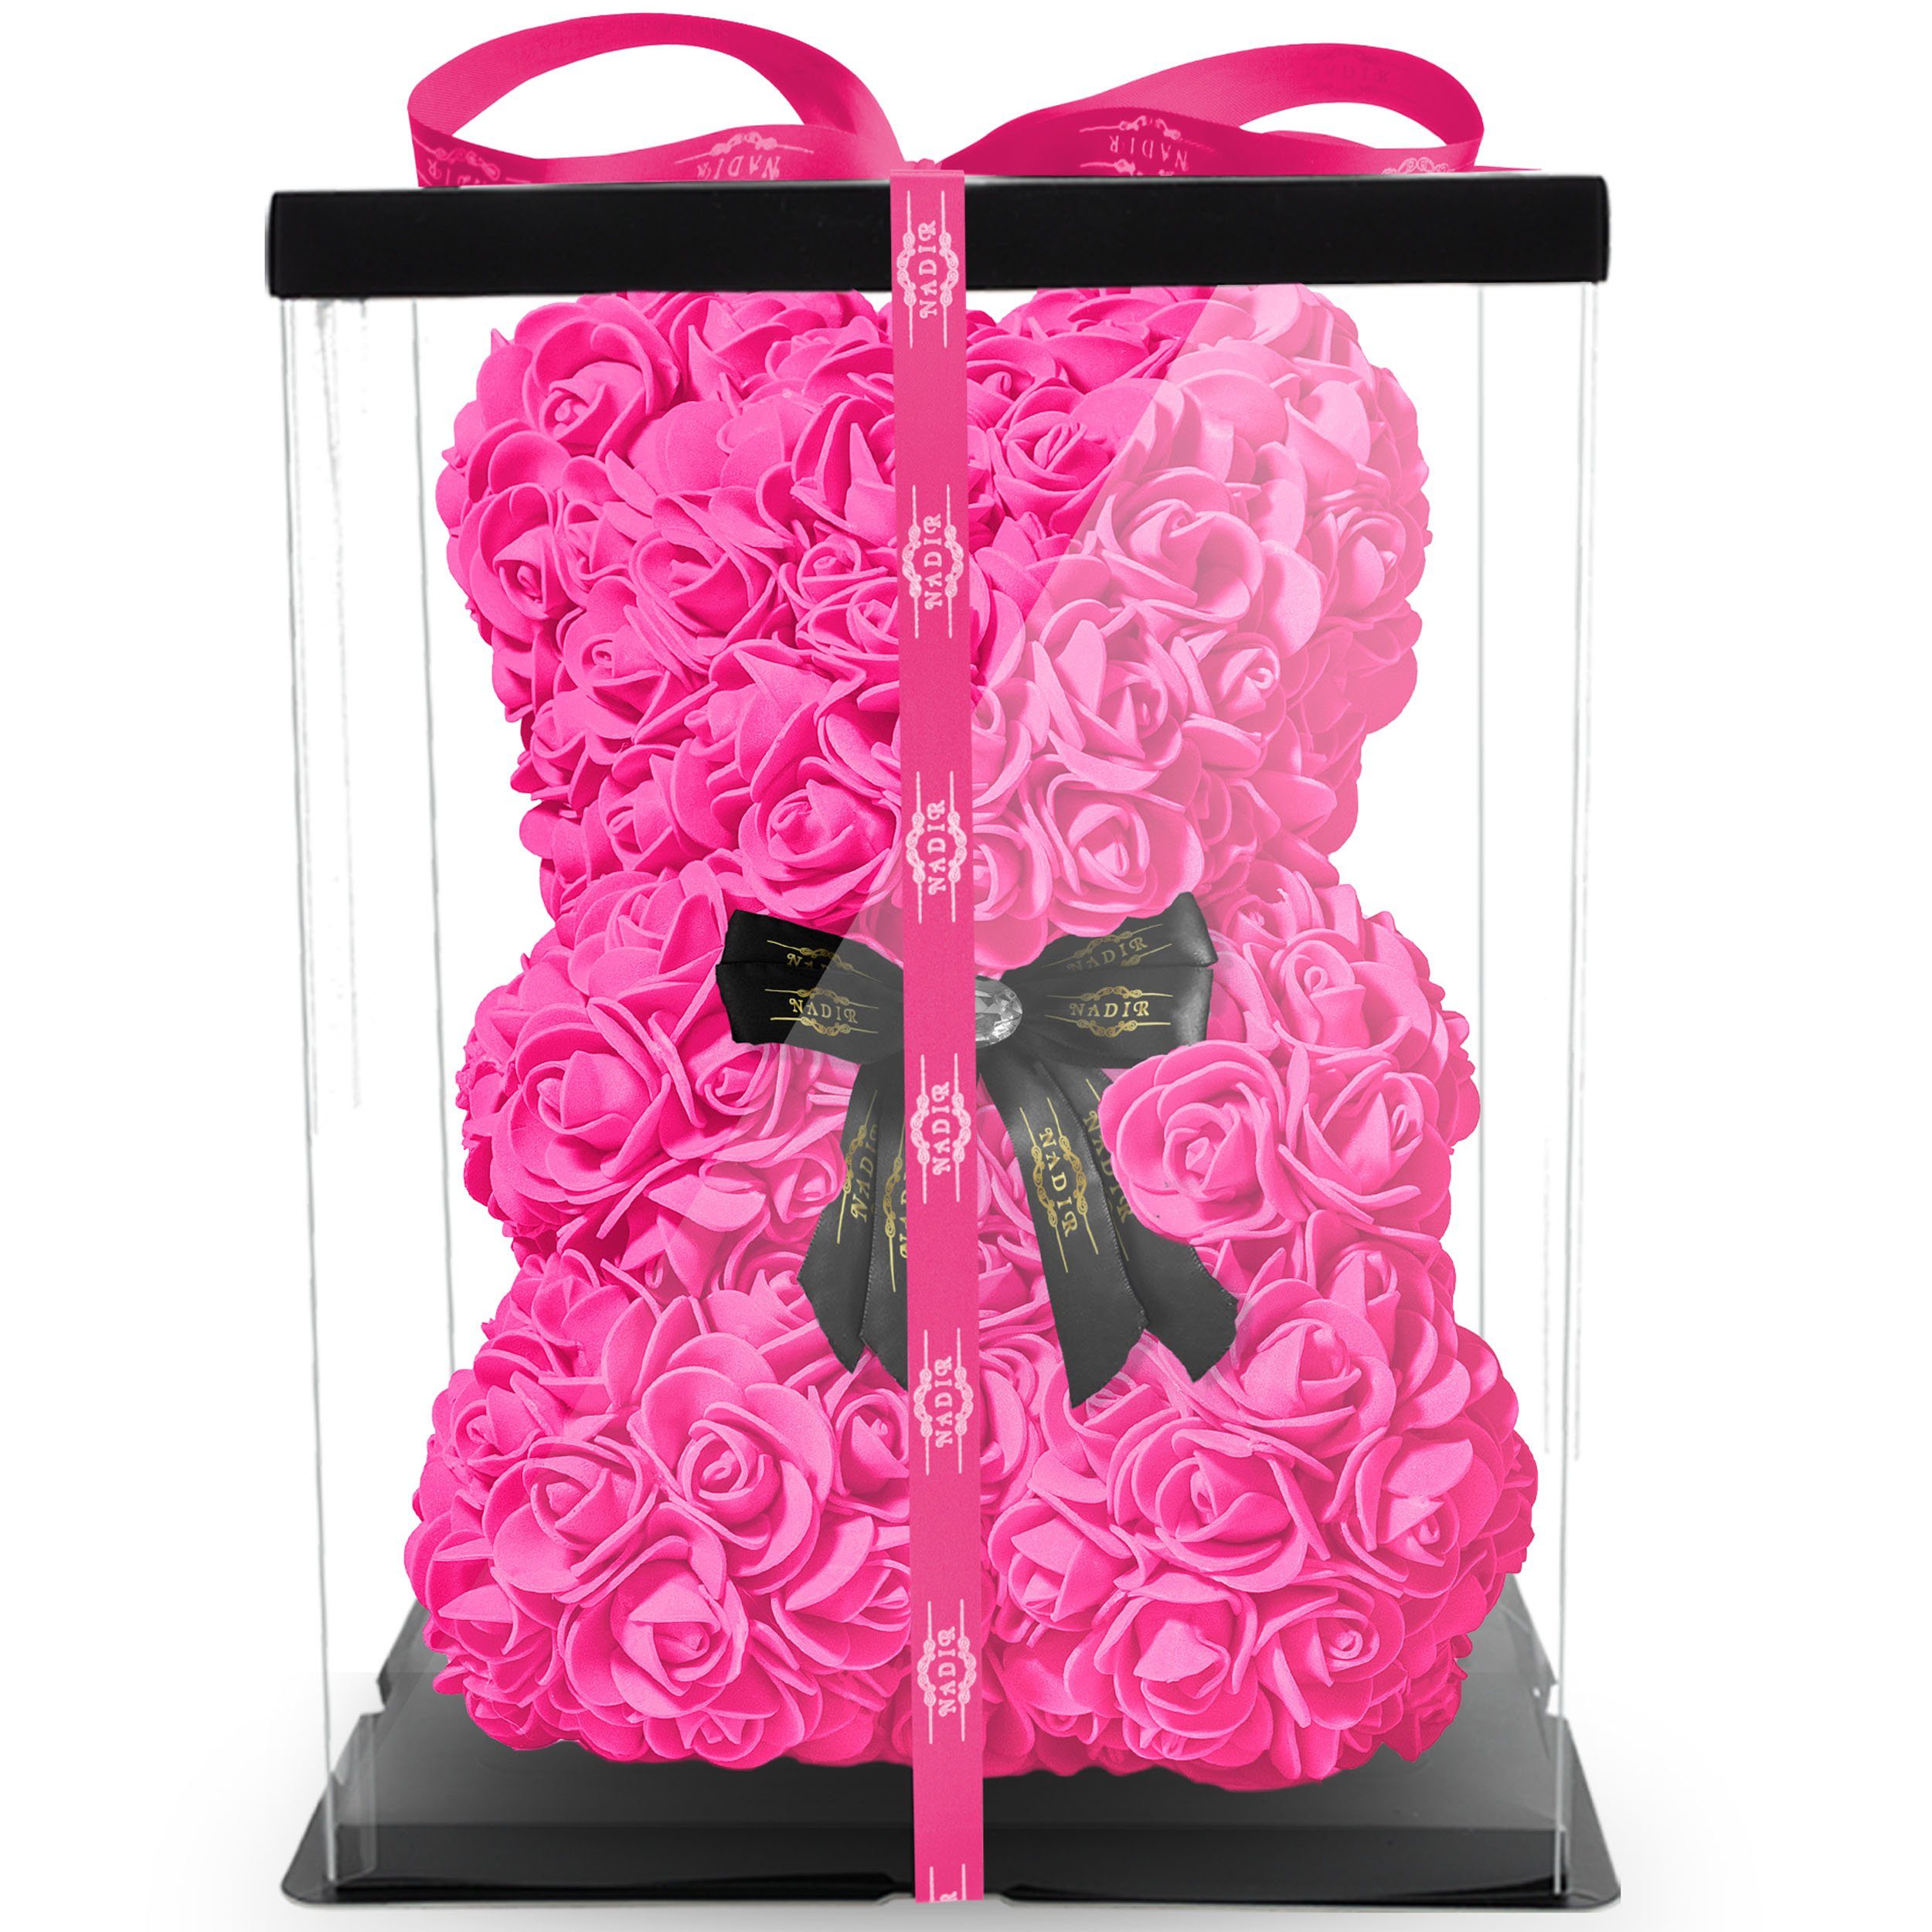 Rosenbär 40cm extra groß mit Geschenkbox Rosen Bär Handgemacht Rosen Teddybär 